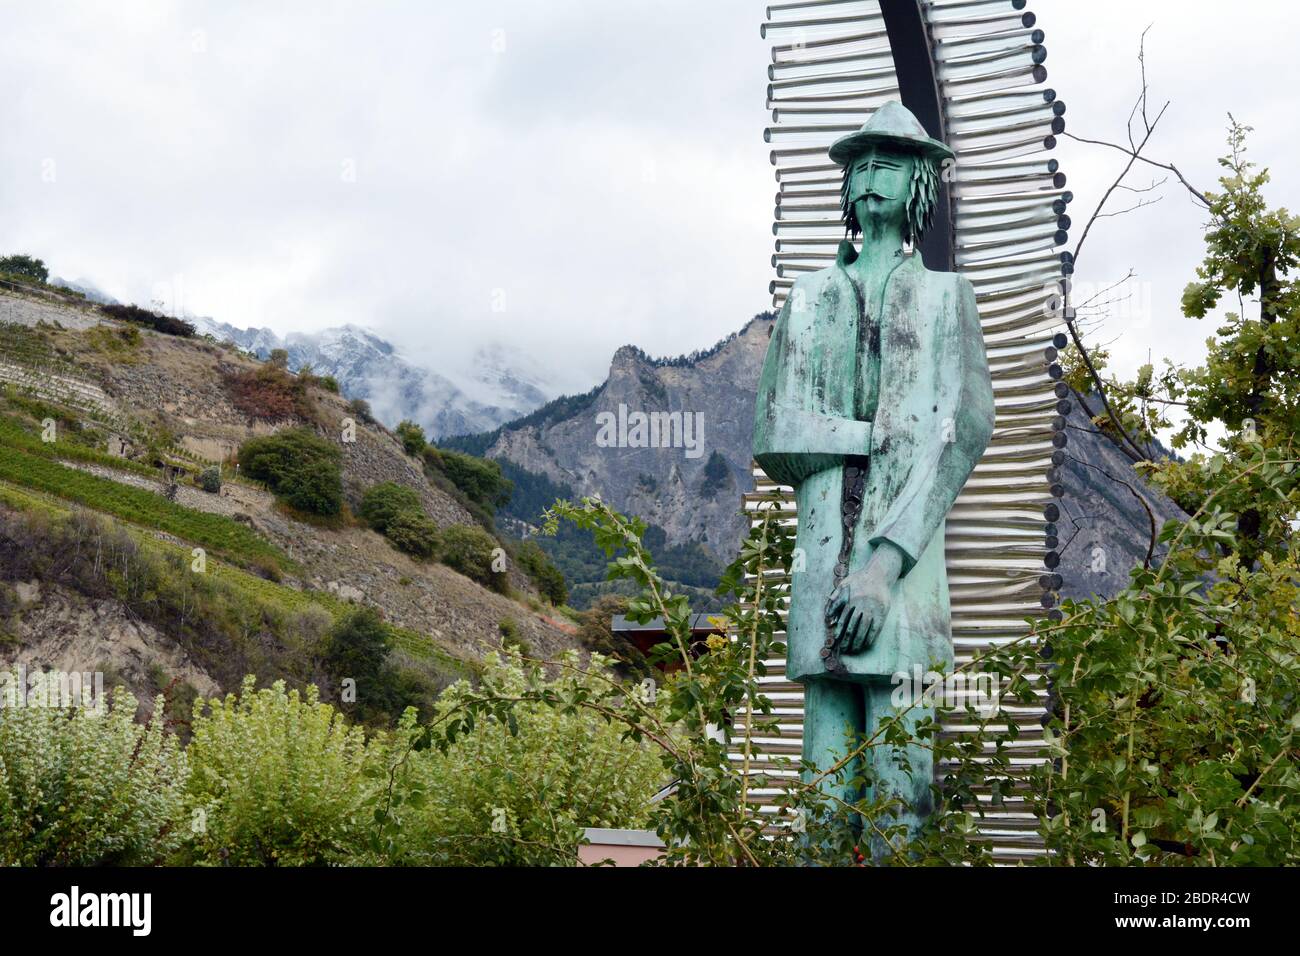 Una statua di Joseph Samuel Farinet, un fuorilegge svizzero del XIX secolo in stile Robin Hood che aiutò i poveri, a Saillon, nel cantone del Vallese, in Svizzera. Foto Stock